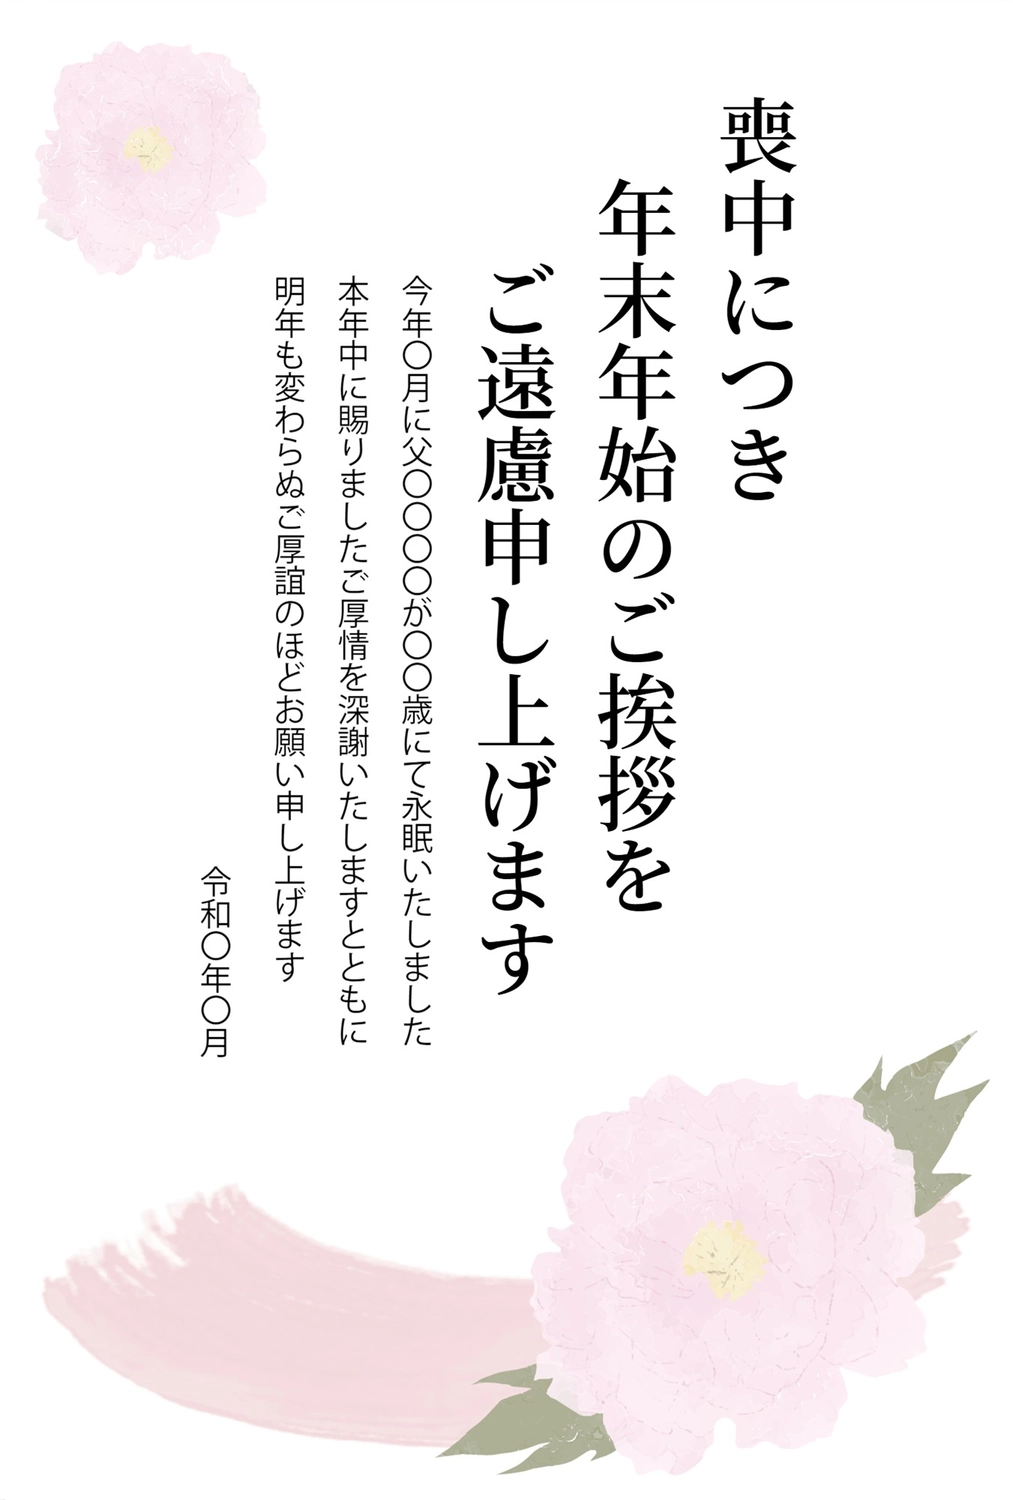 牡丹の喪中はがき, New Year's greeting card, Pink Flowers, death, Mourning Postcard template